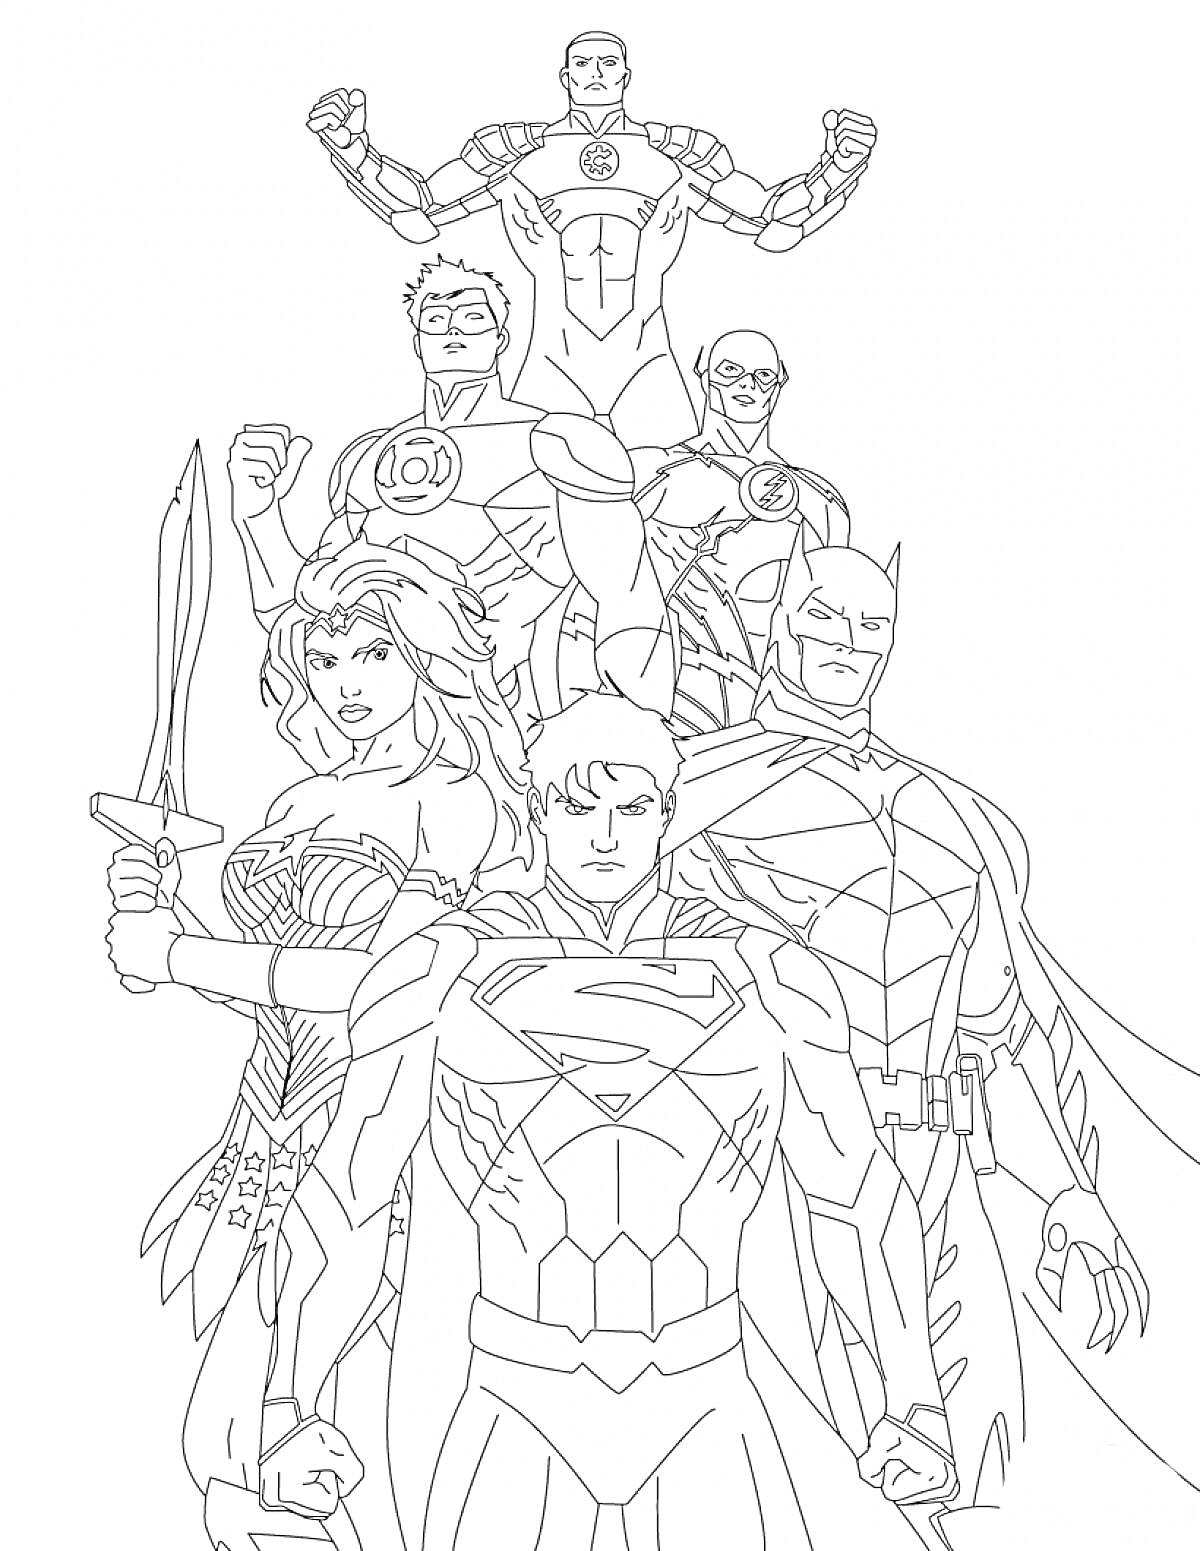 Все герои Лиги Справедливости в боевой готовности - Супермен, Бэтмен, Чудо-женщина, Зелёный Фонарь, Флэш, Киборг